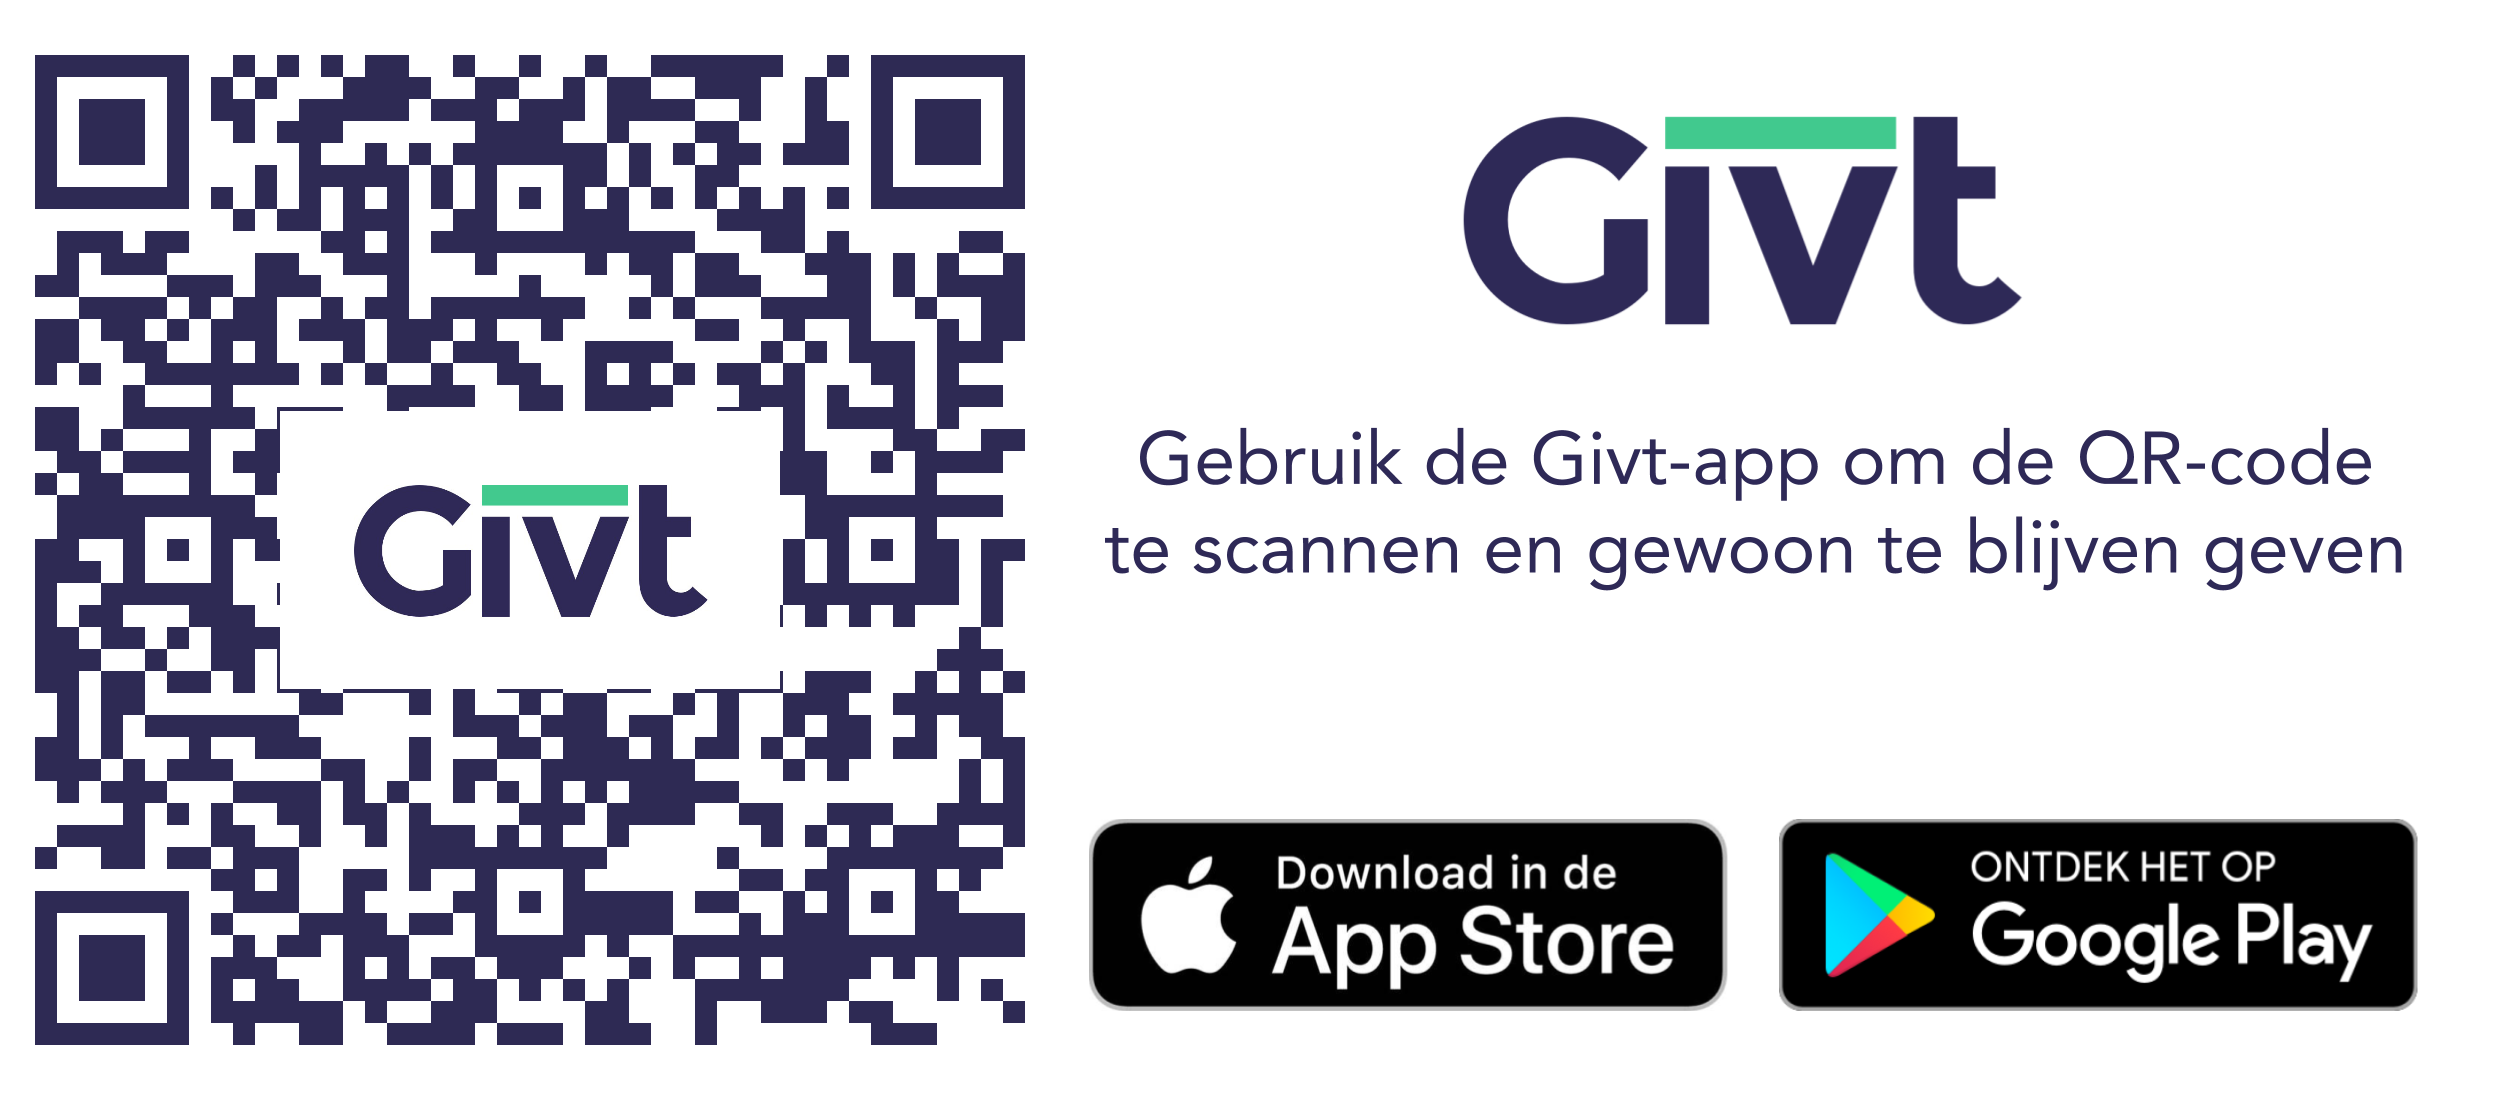 Makkelijk doneren via de Givt-app